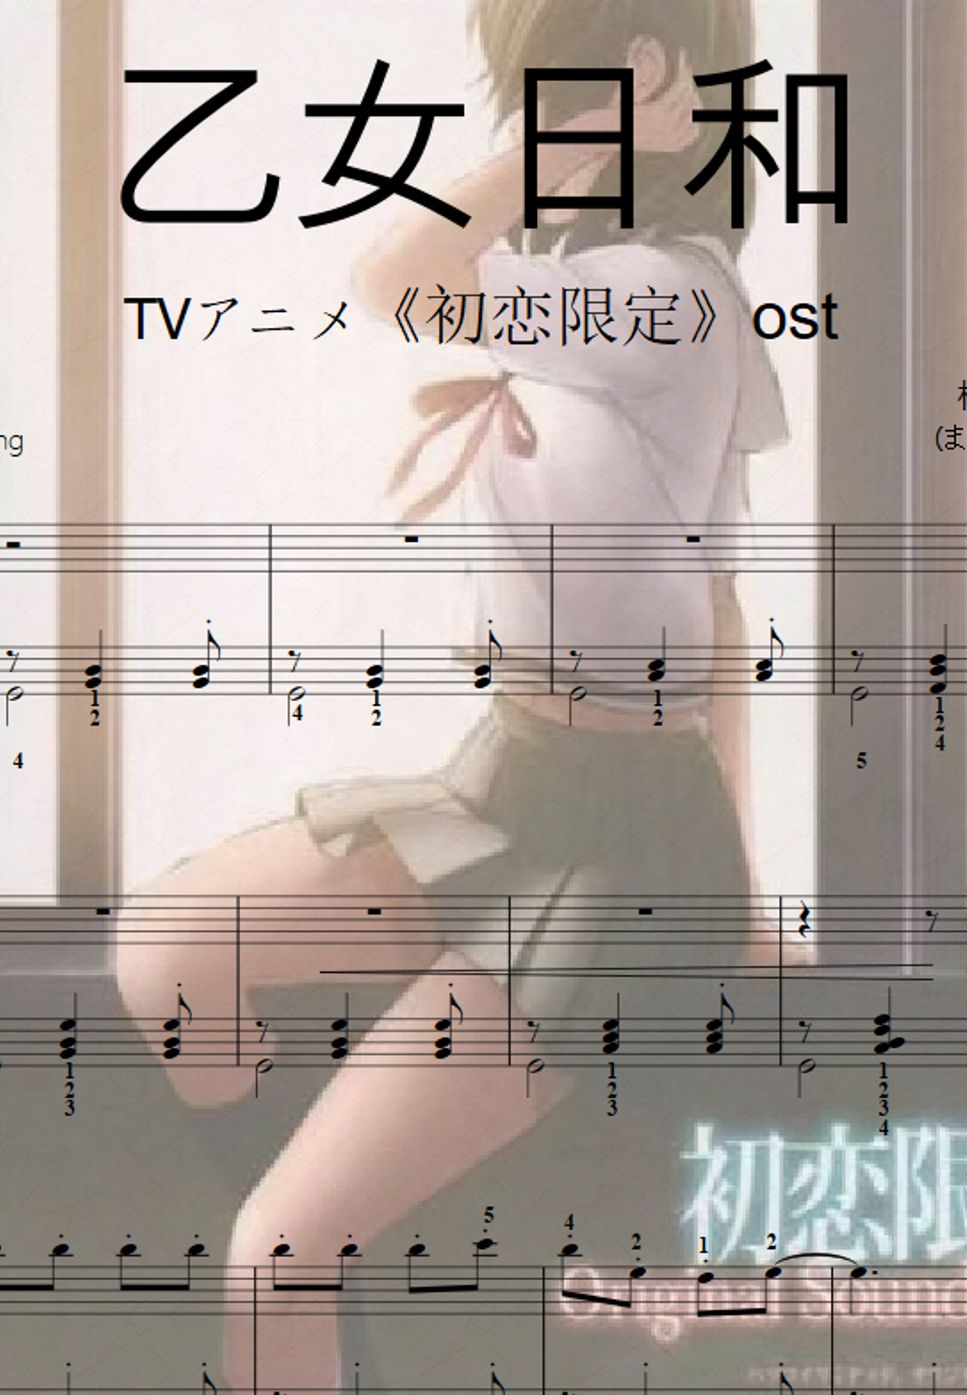 松田彬人 (まつだ あきと) - 乙女日和-TVアニメ《初恋限定》ost(easy piano solo) by likeasong